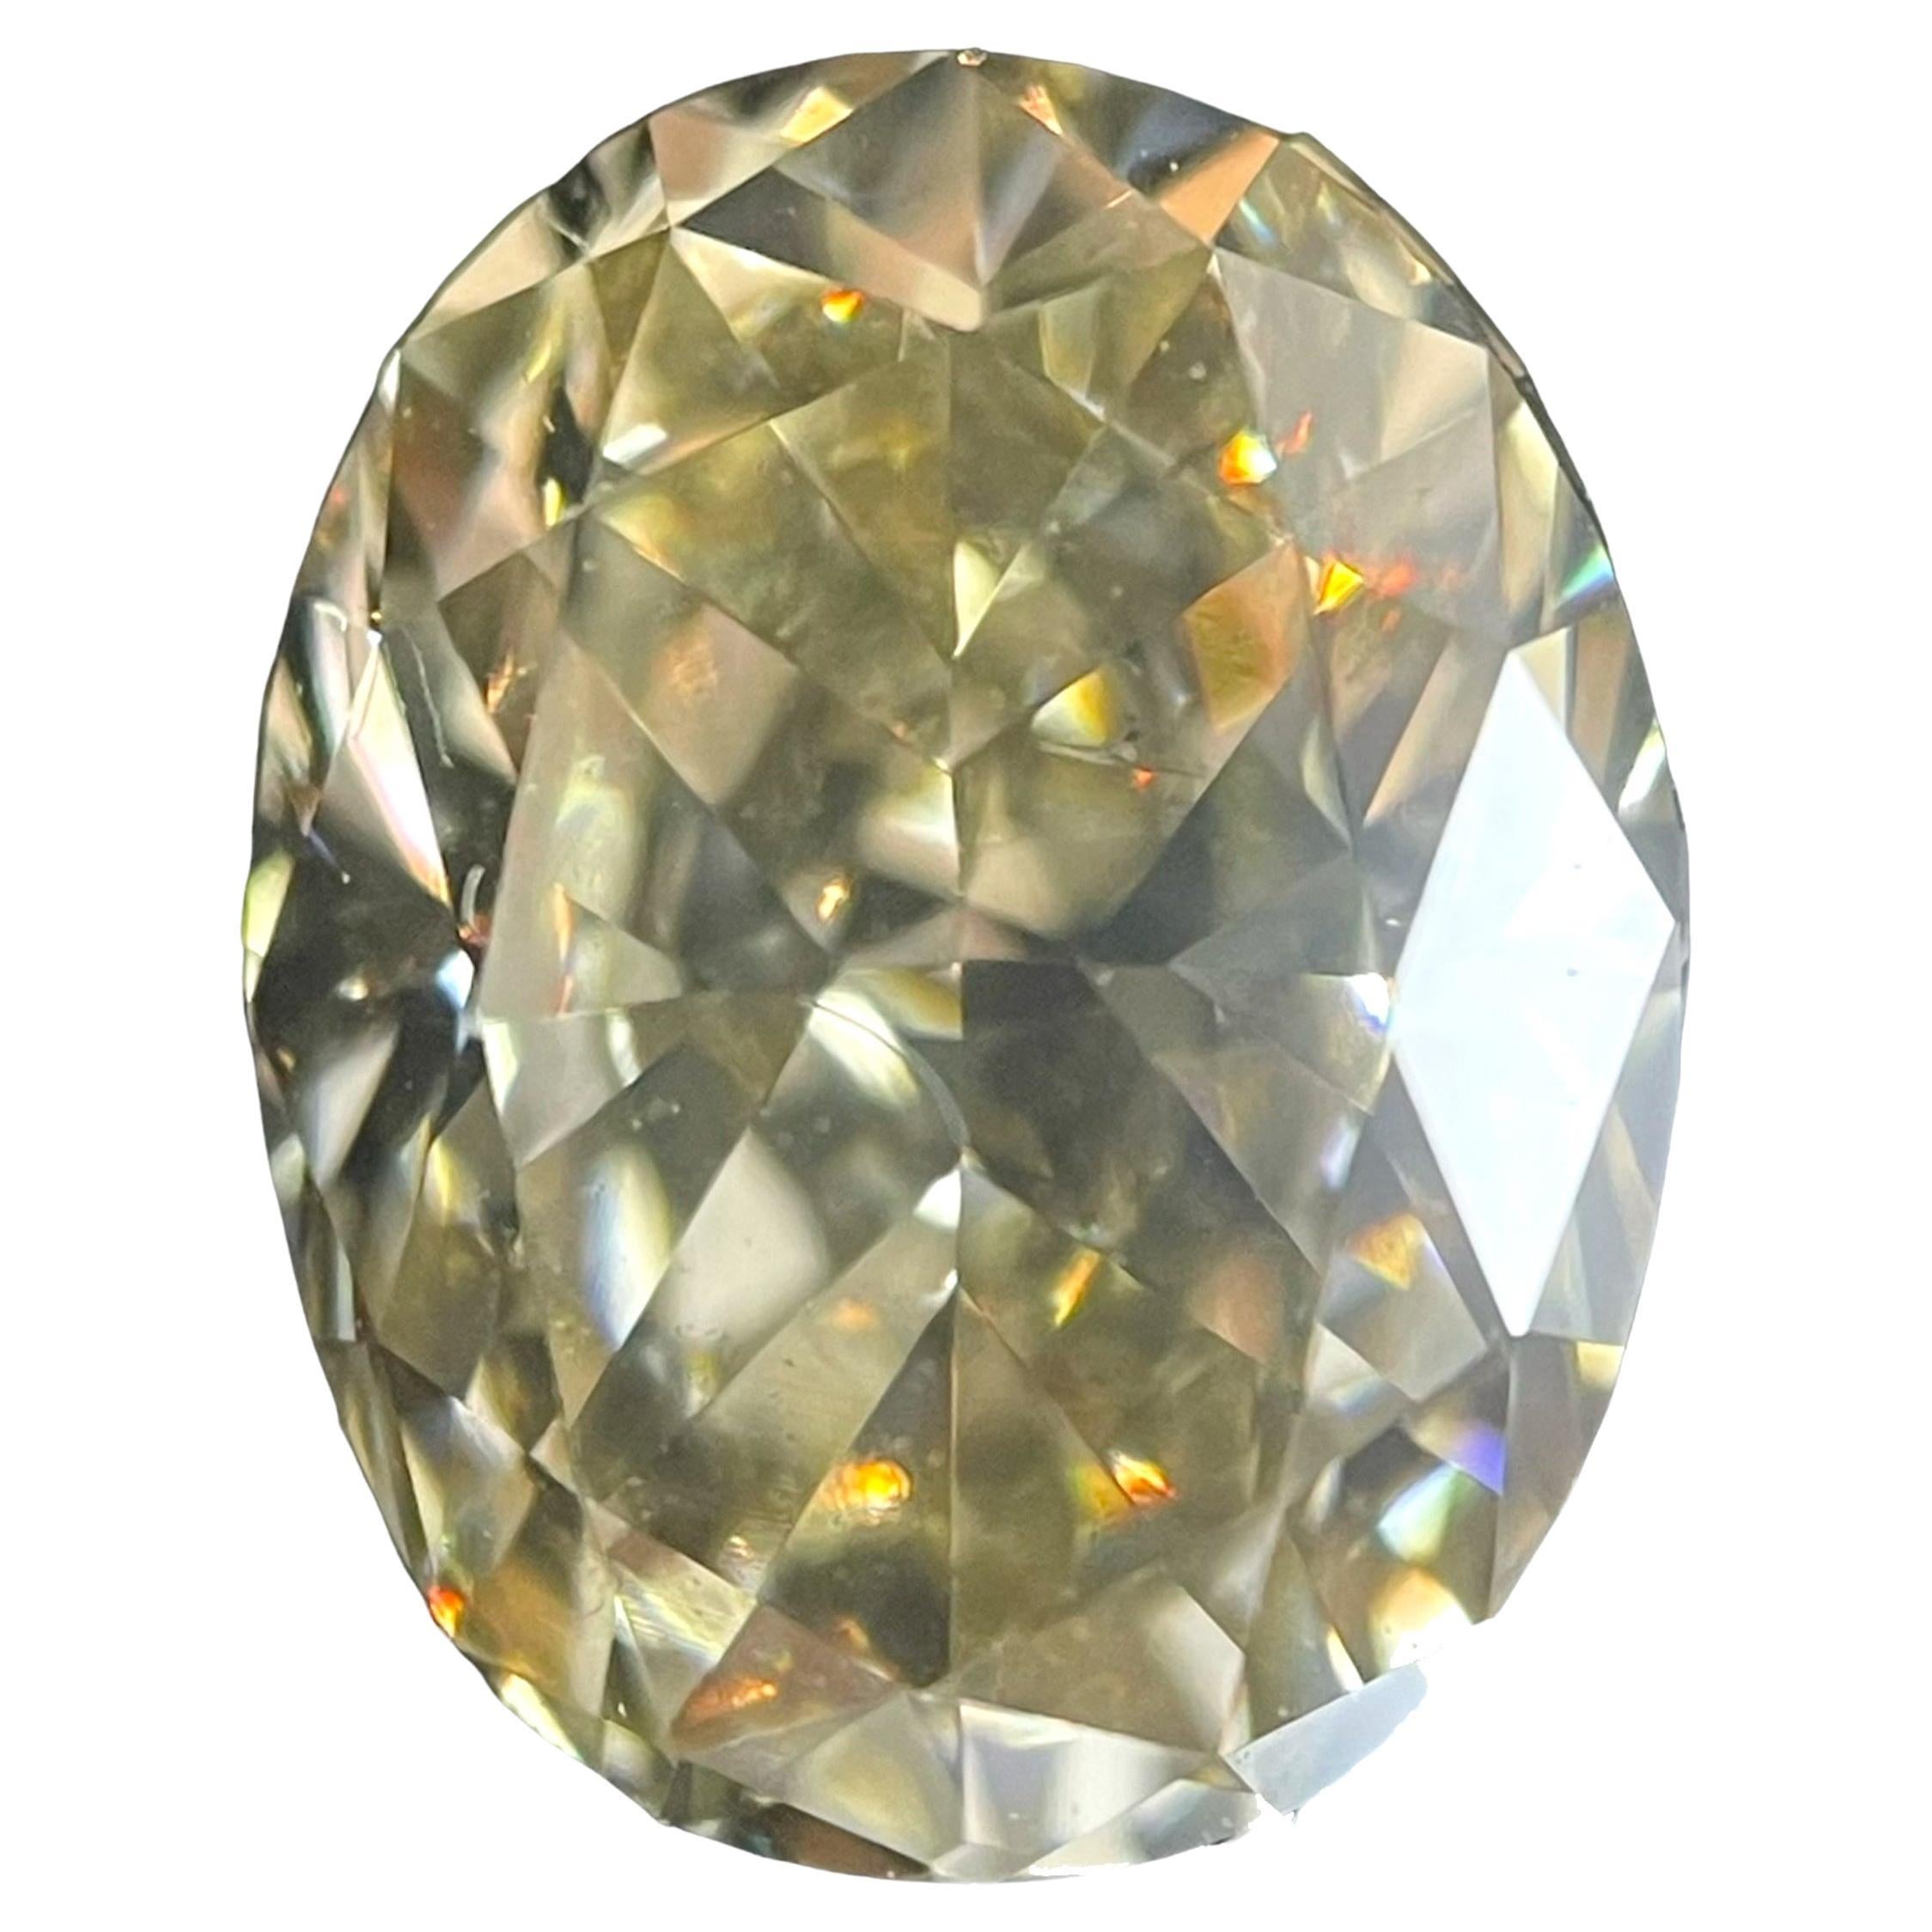 Diamant ovale de 1,52 carat de pureté jaune brunâtre fantaisie certifié par le GIA, SI1